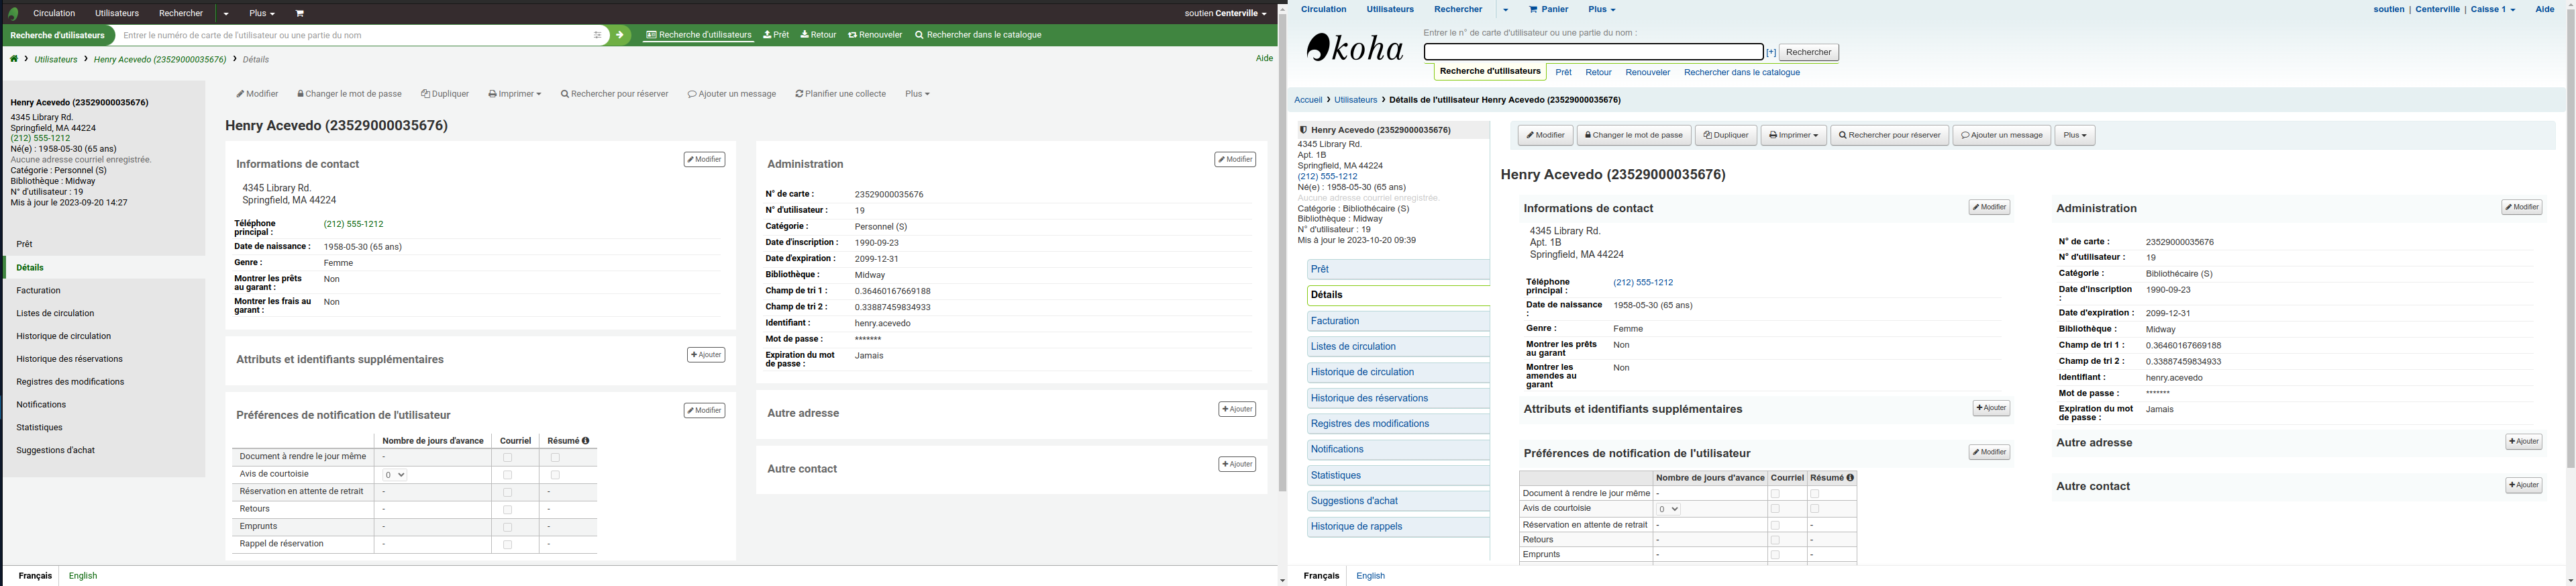 Comparaison d'un dossier d'utilisateur dans Koha, 23.05 est à gauche, 22.05 est à droite